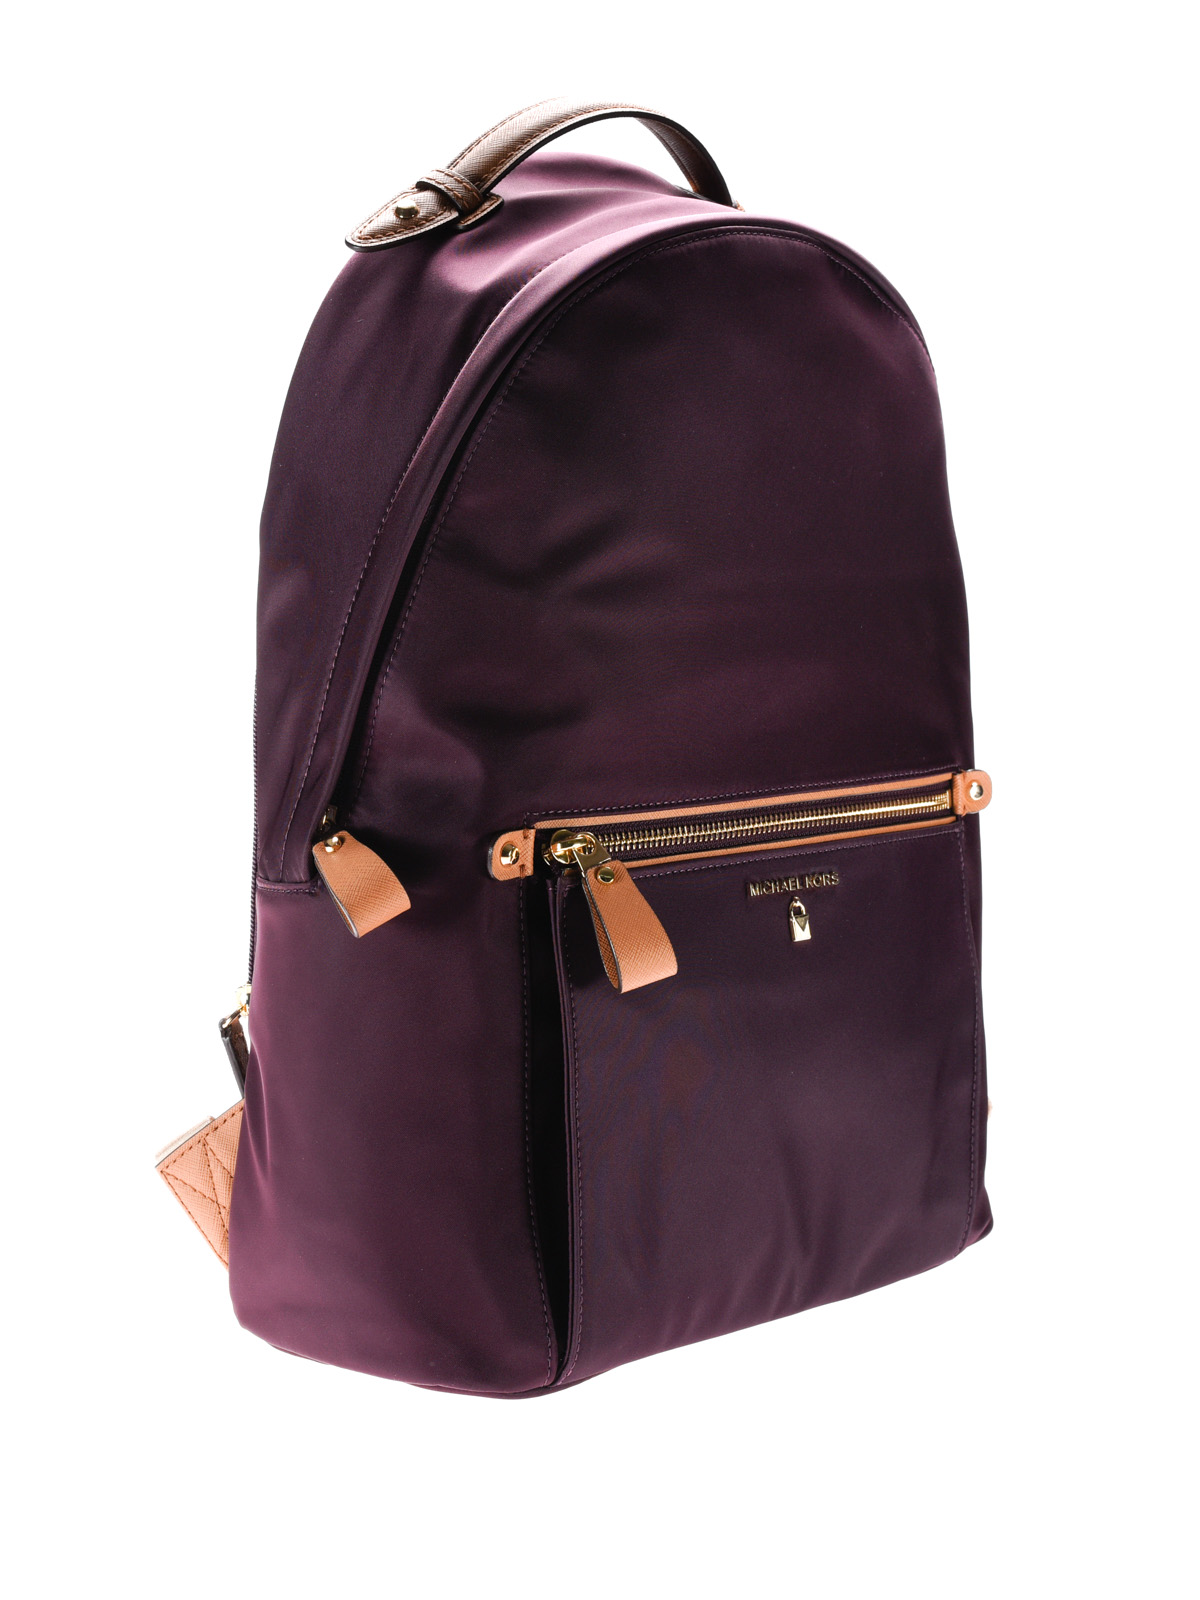 nylon backpack michael kors